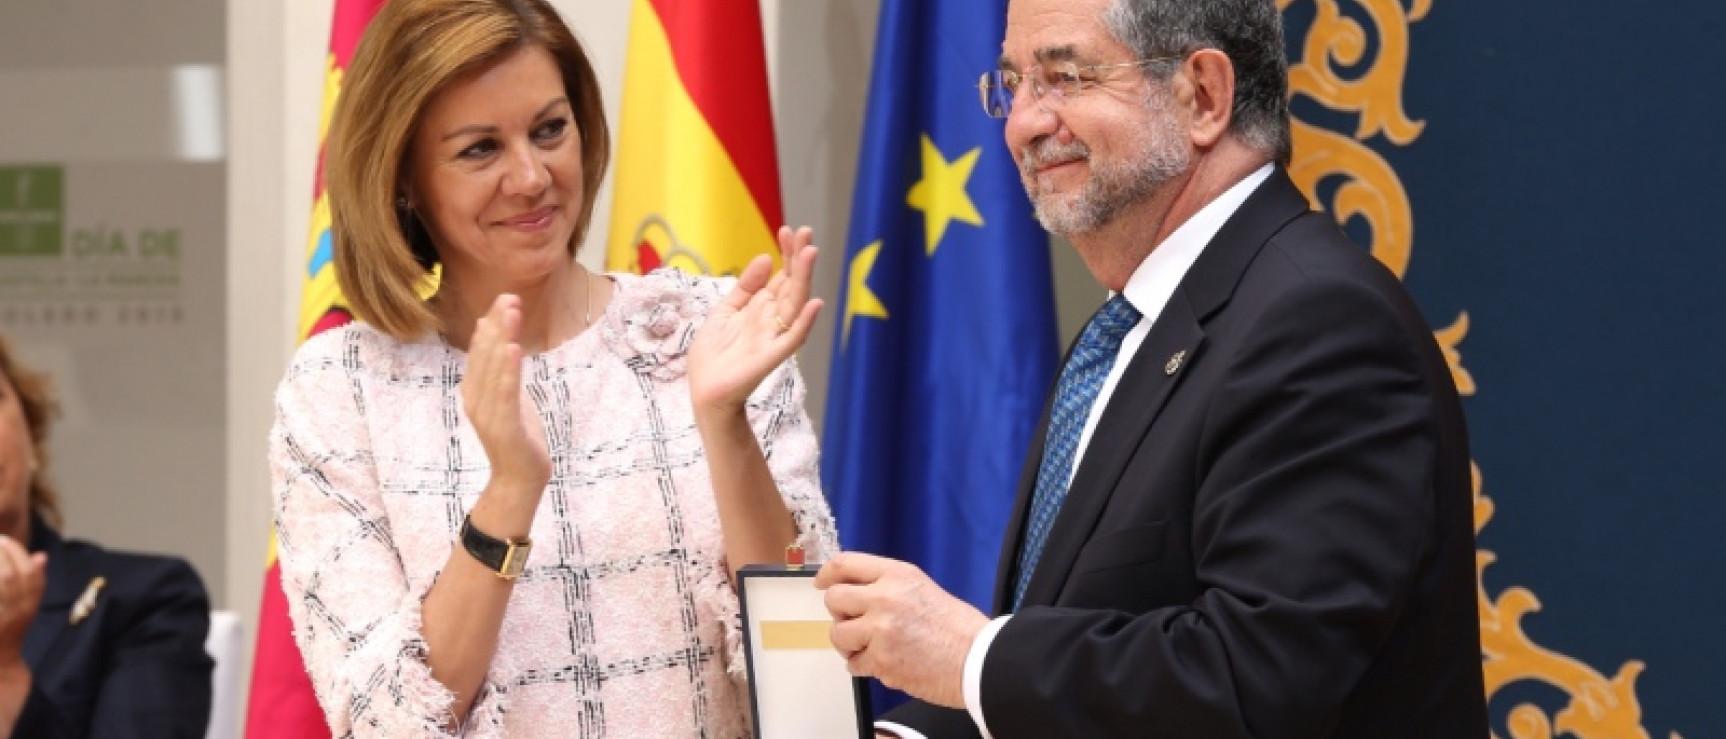 José Antonio Pascual, vicedirector de la RAE, recibe la Medalla de Oro de Castilla-La Mancha, en nombre de la corporación. Foto: Gobierno de Castilla-La Mancha. 